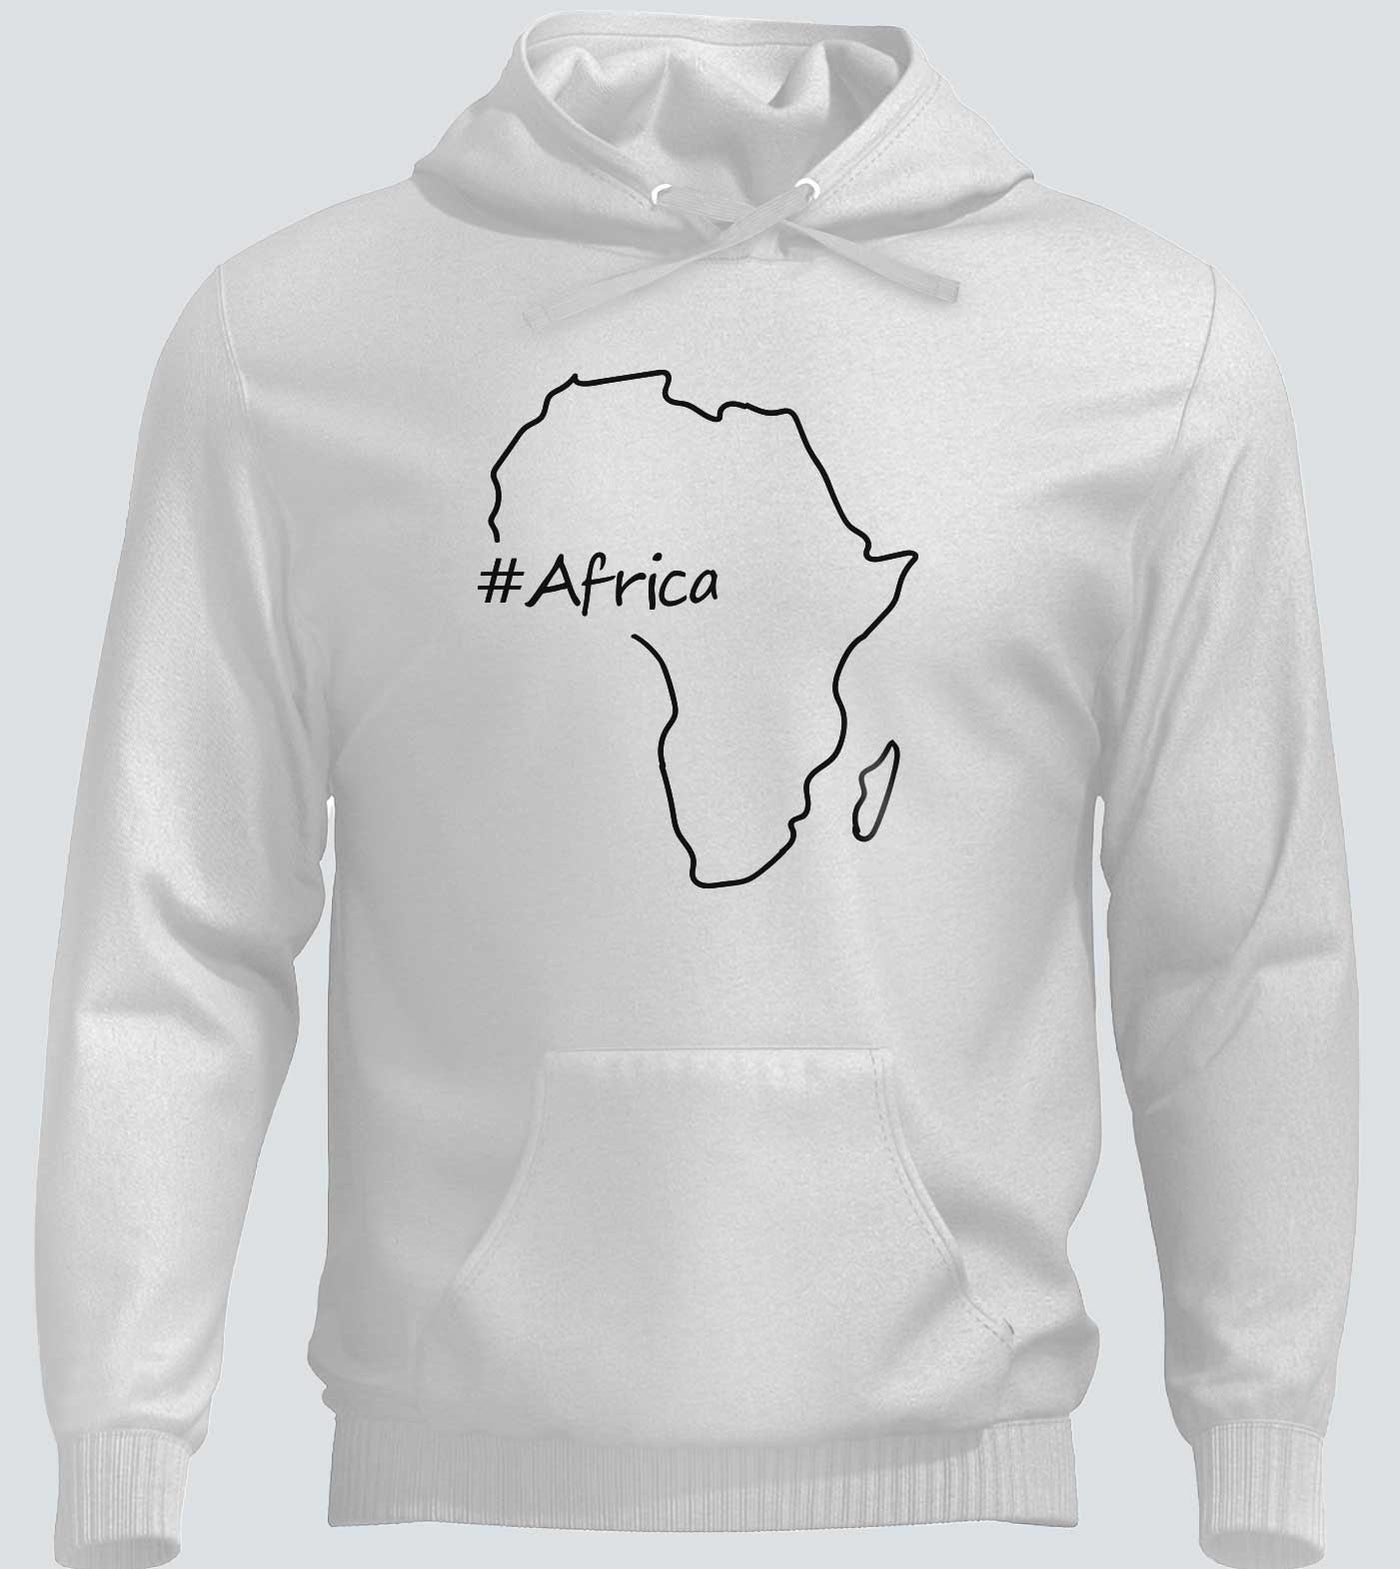 # Africa Hoodies